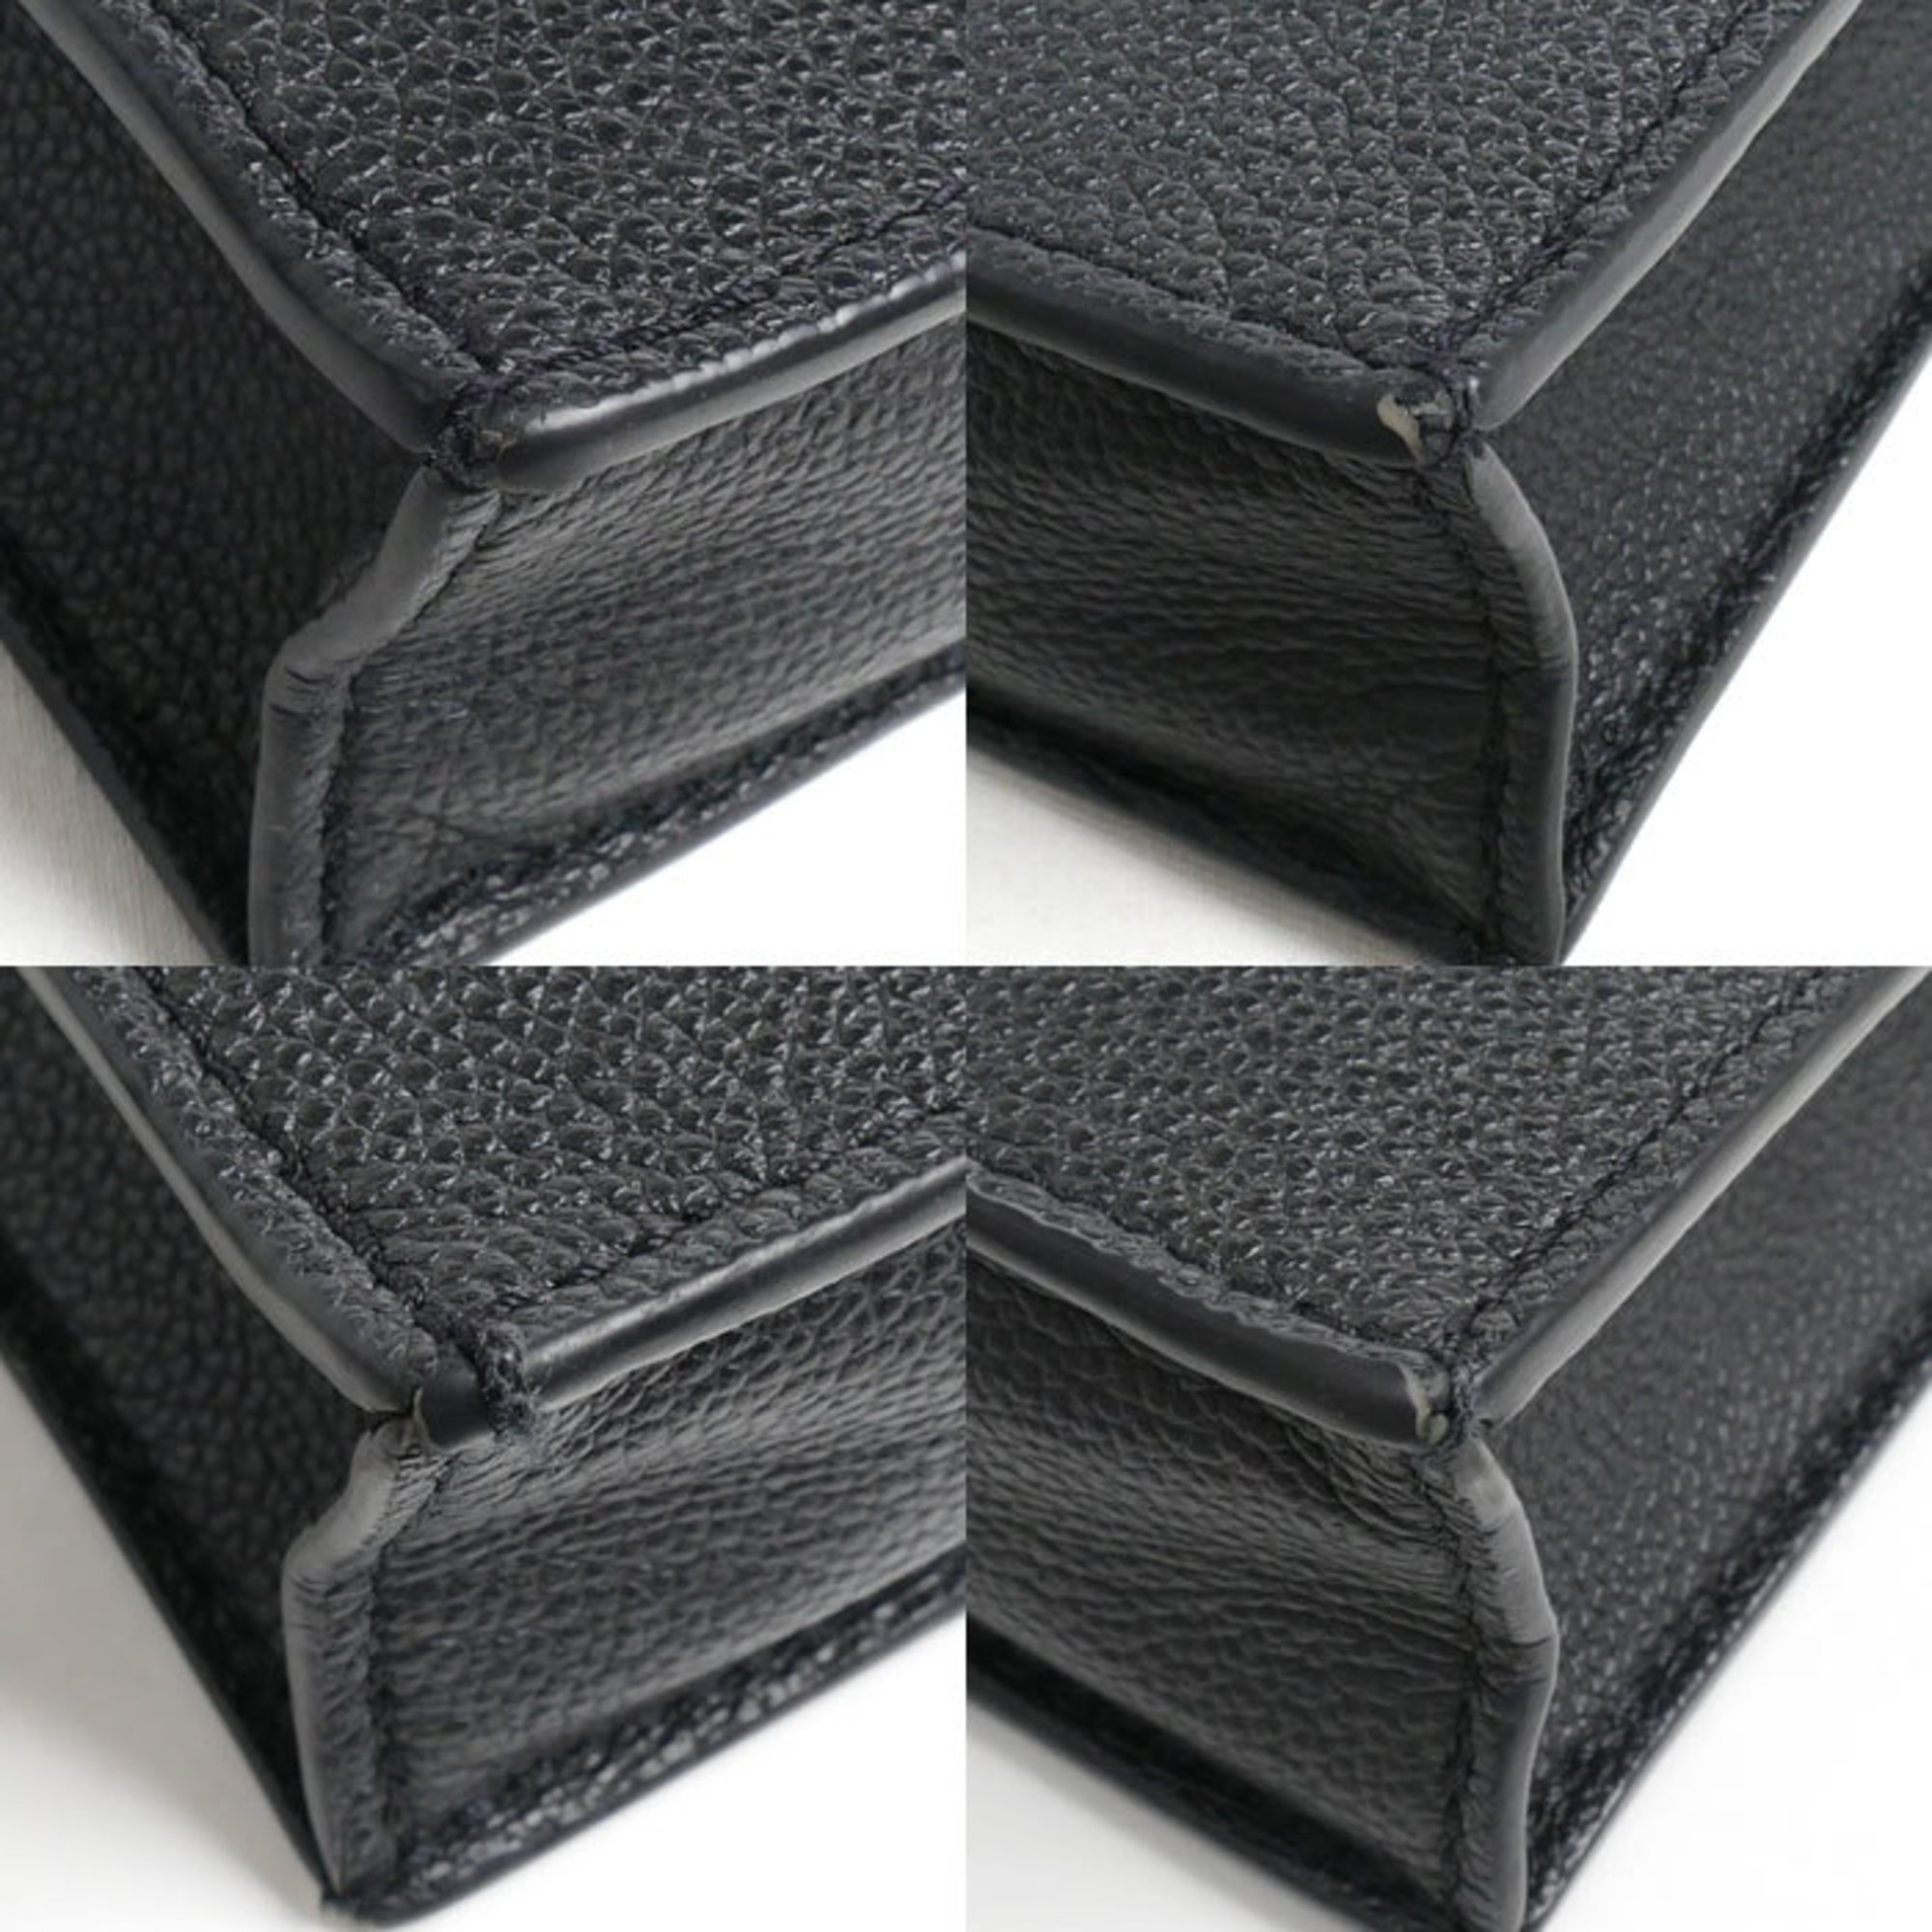 LOUIS VUITTON Louis Vuitton Petite Sac Plat 2-Way Shoulder Bag Monogram Empreinte Black Beige M57937 Women's